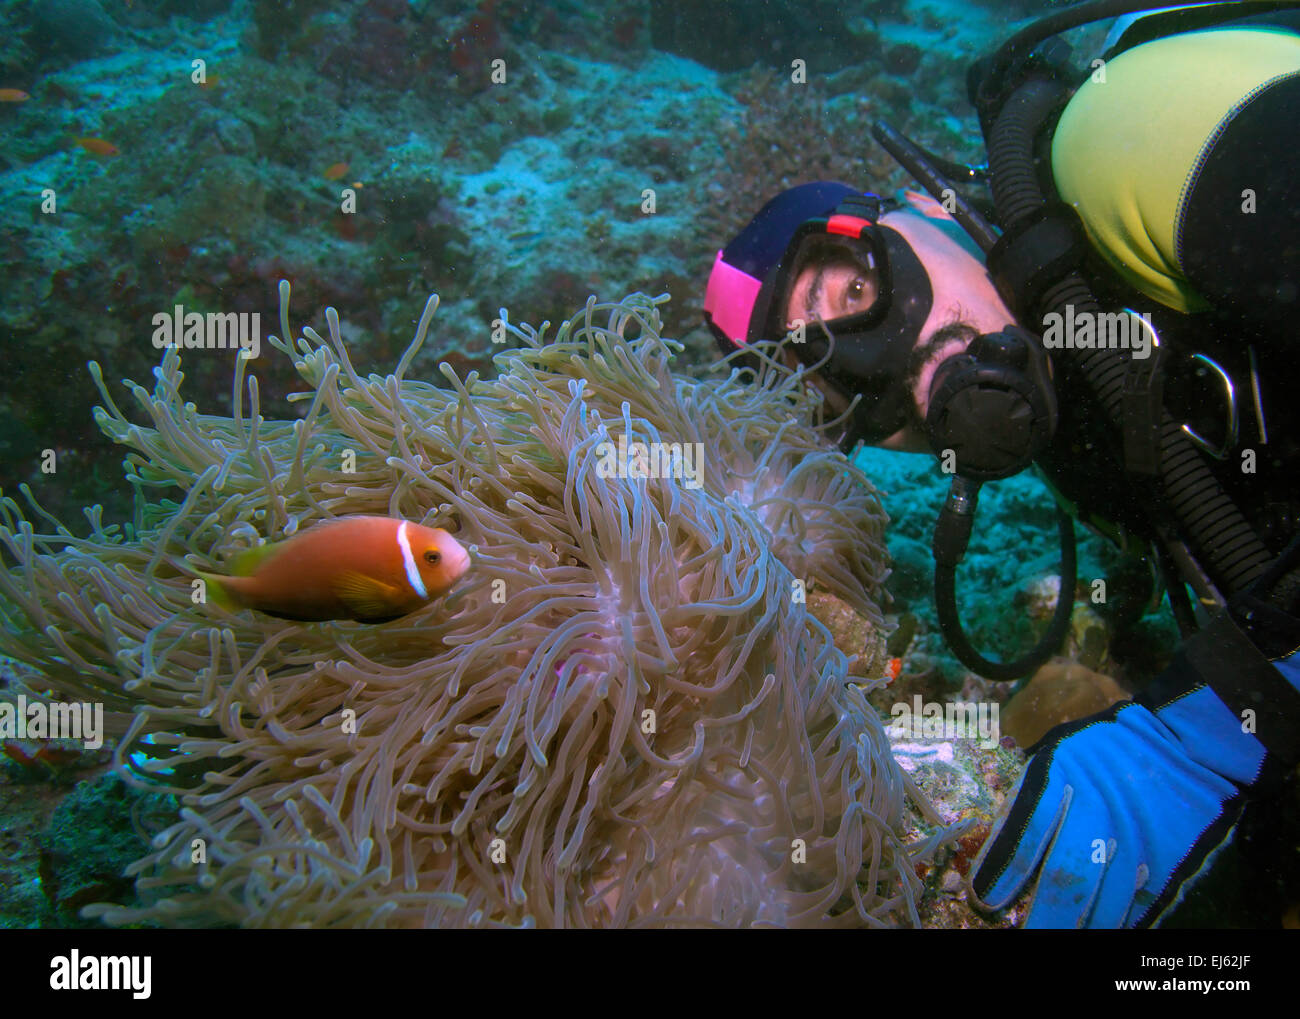 Les Maldives poisson clown (Amphiprion nigripes) dans une anémone de mer (Heteractis magnifica) et plongeur, Maldives Banque D'Images